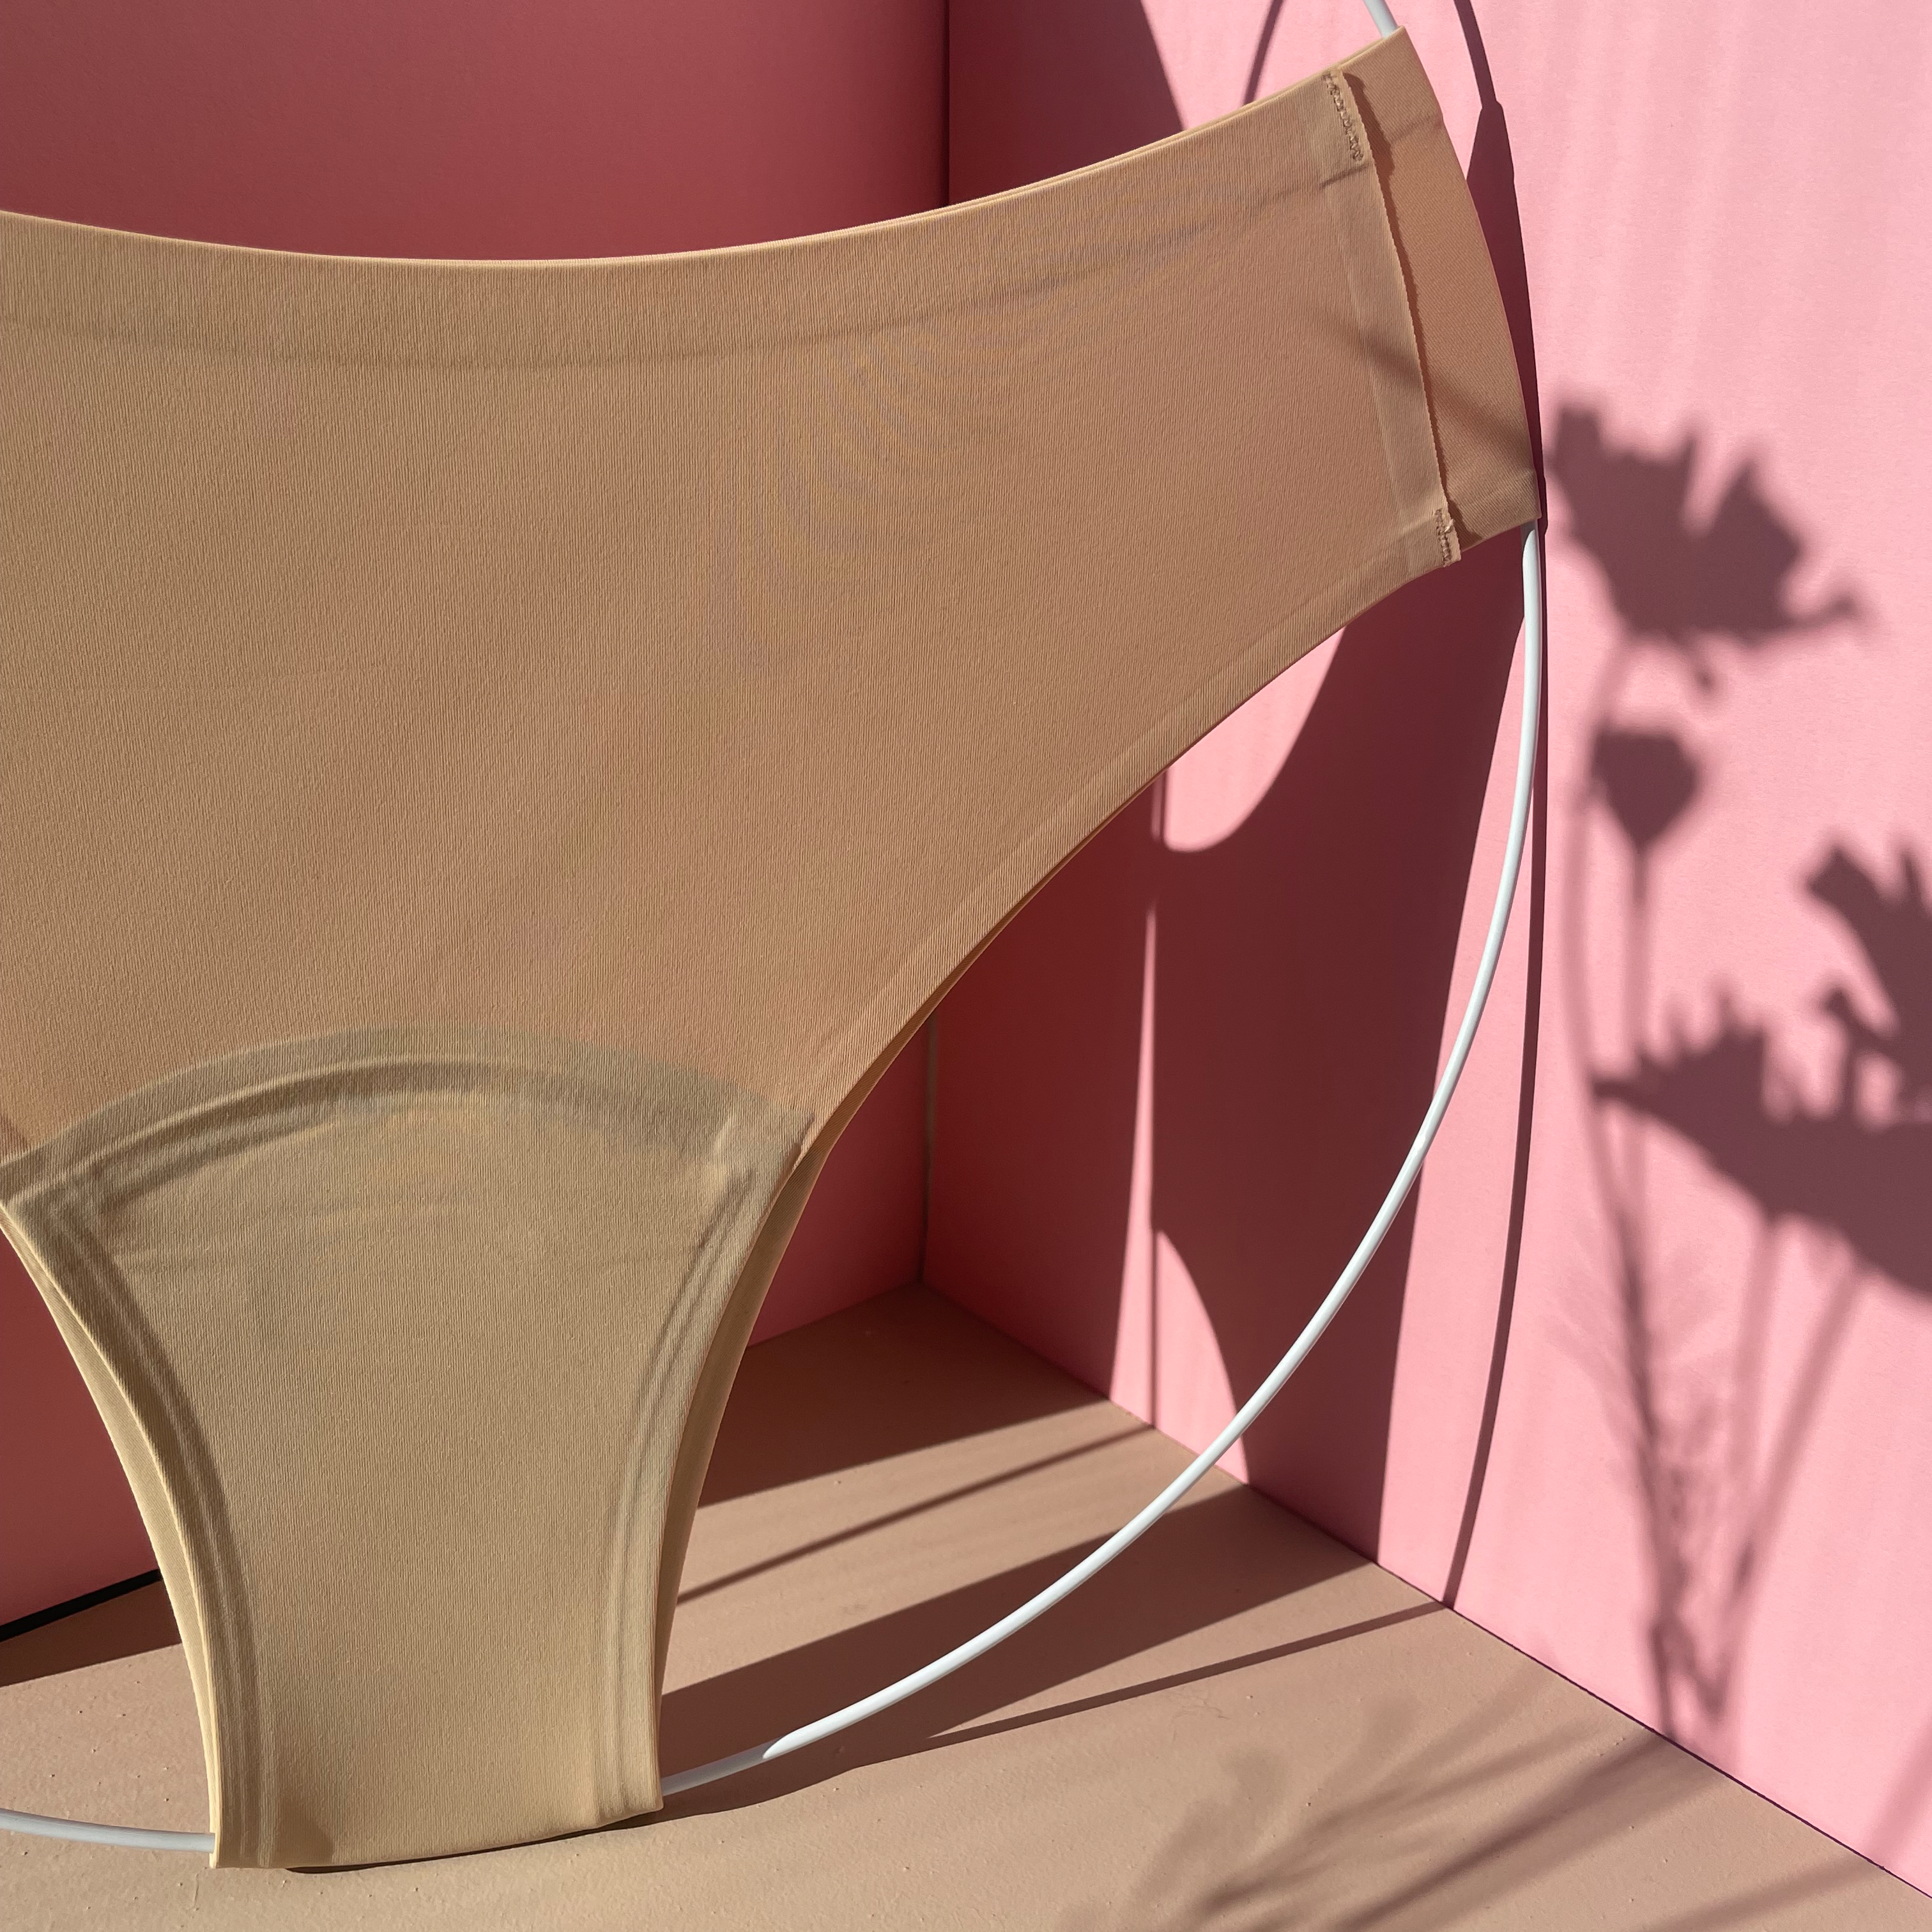 dais Period Underwear | Cheeky | Beige